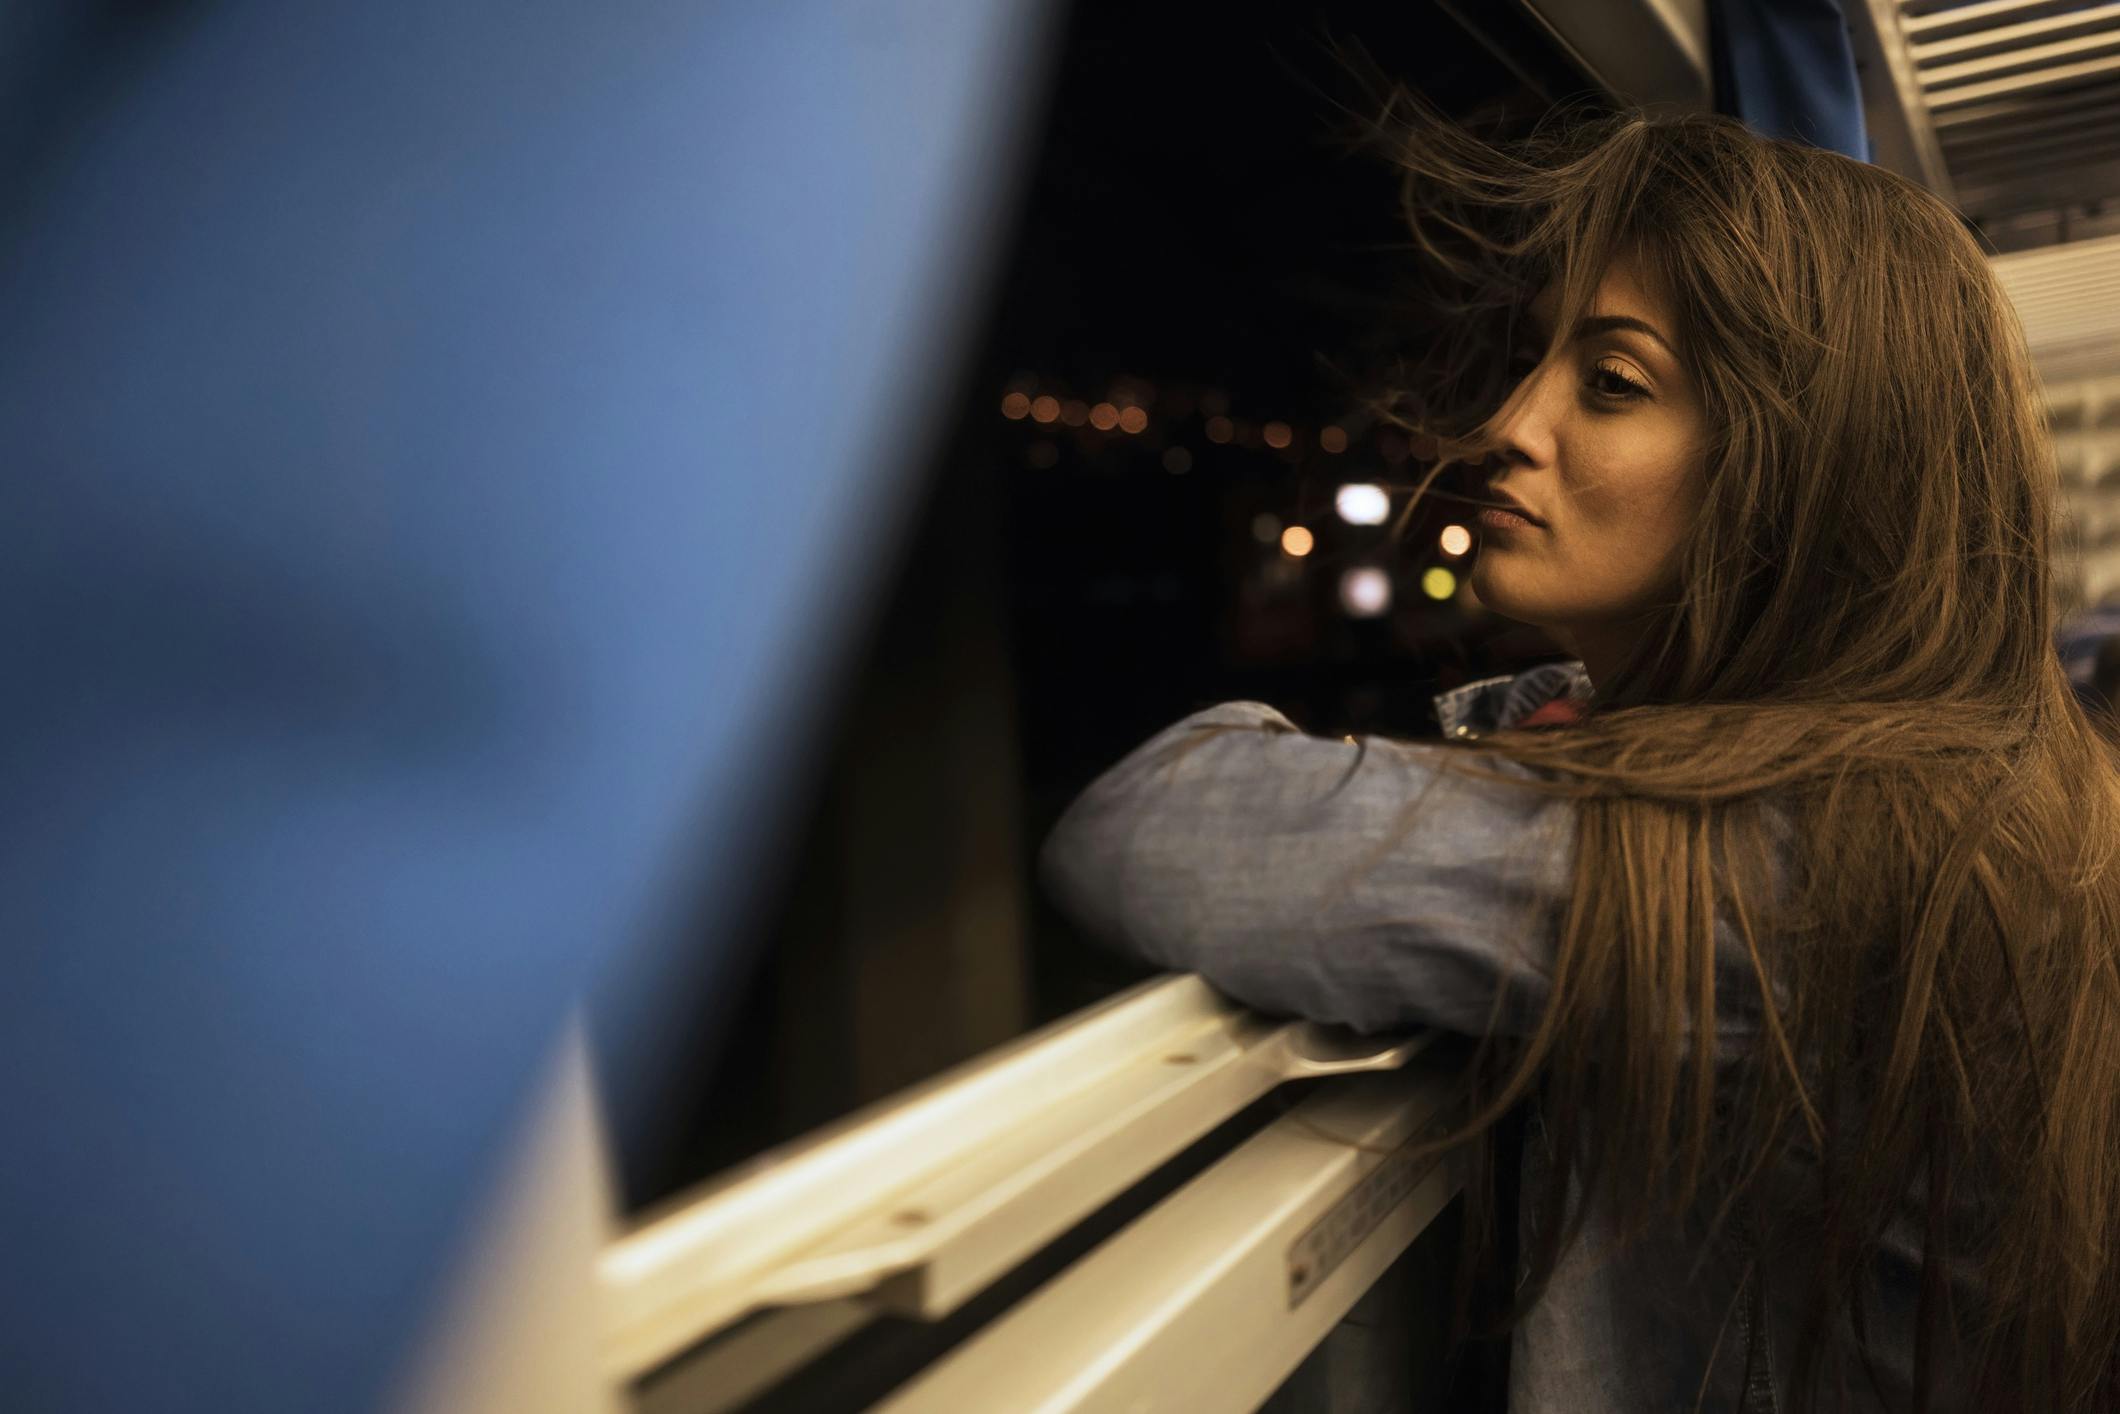 Eine Frau guckt nachts aus dem offenen Zugfenster.